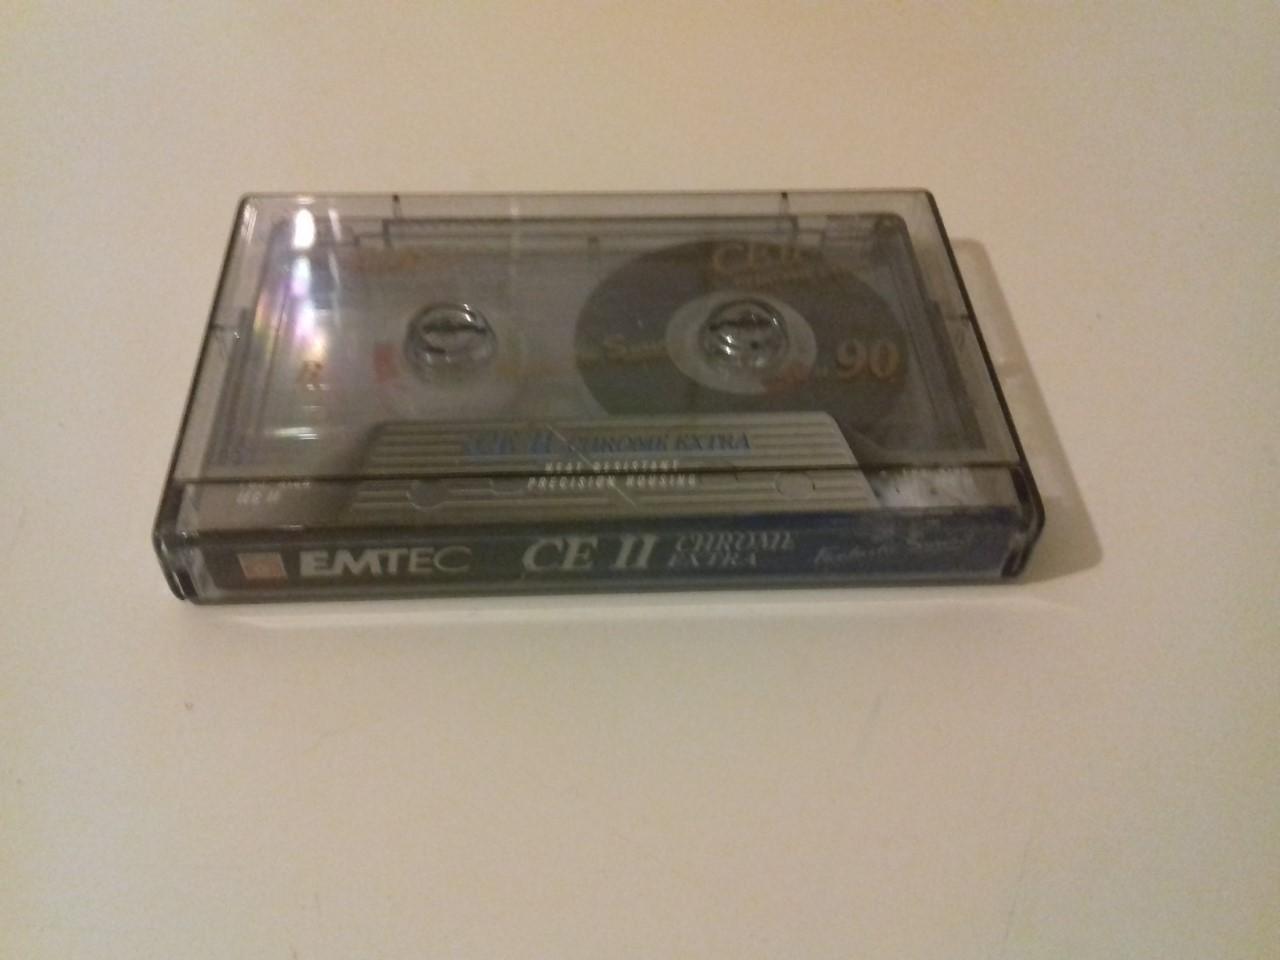 troc de troc j'échange cassette audio - "emtec" image 0